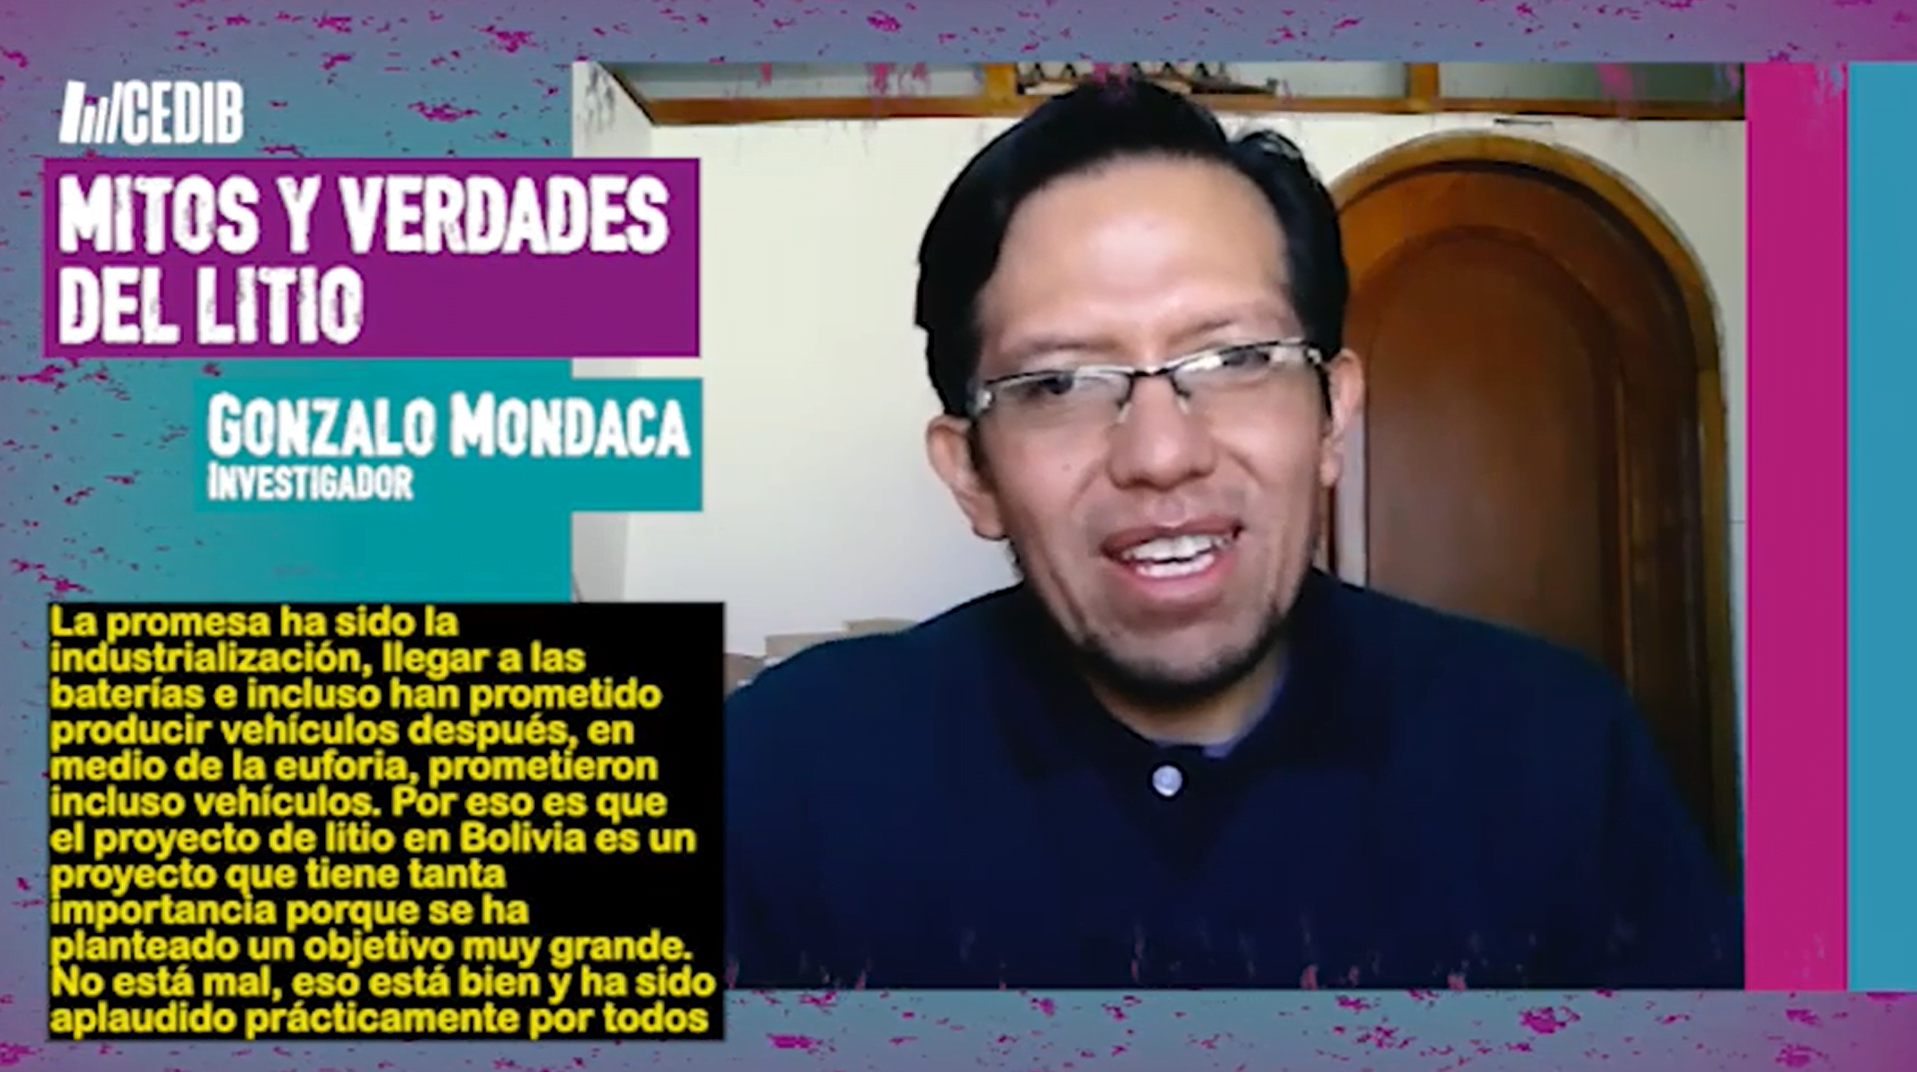 Mitos y verdades del litio: Entrevistas a Gonzalo Mondaca y Pablo Villegas